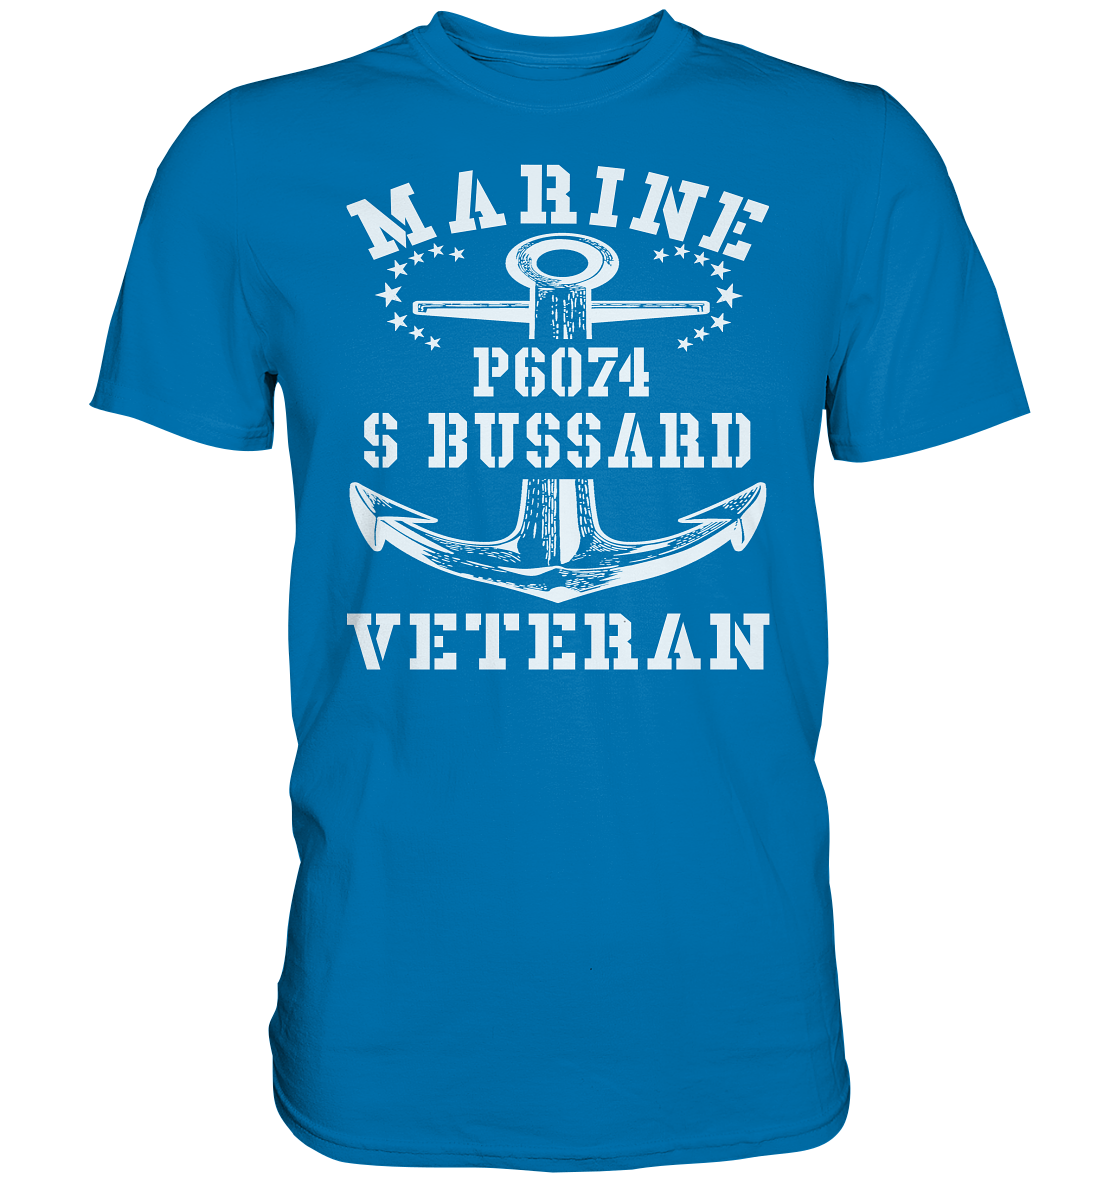 P6074 S BUSSARD Marine Veteran - Premium Shirt